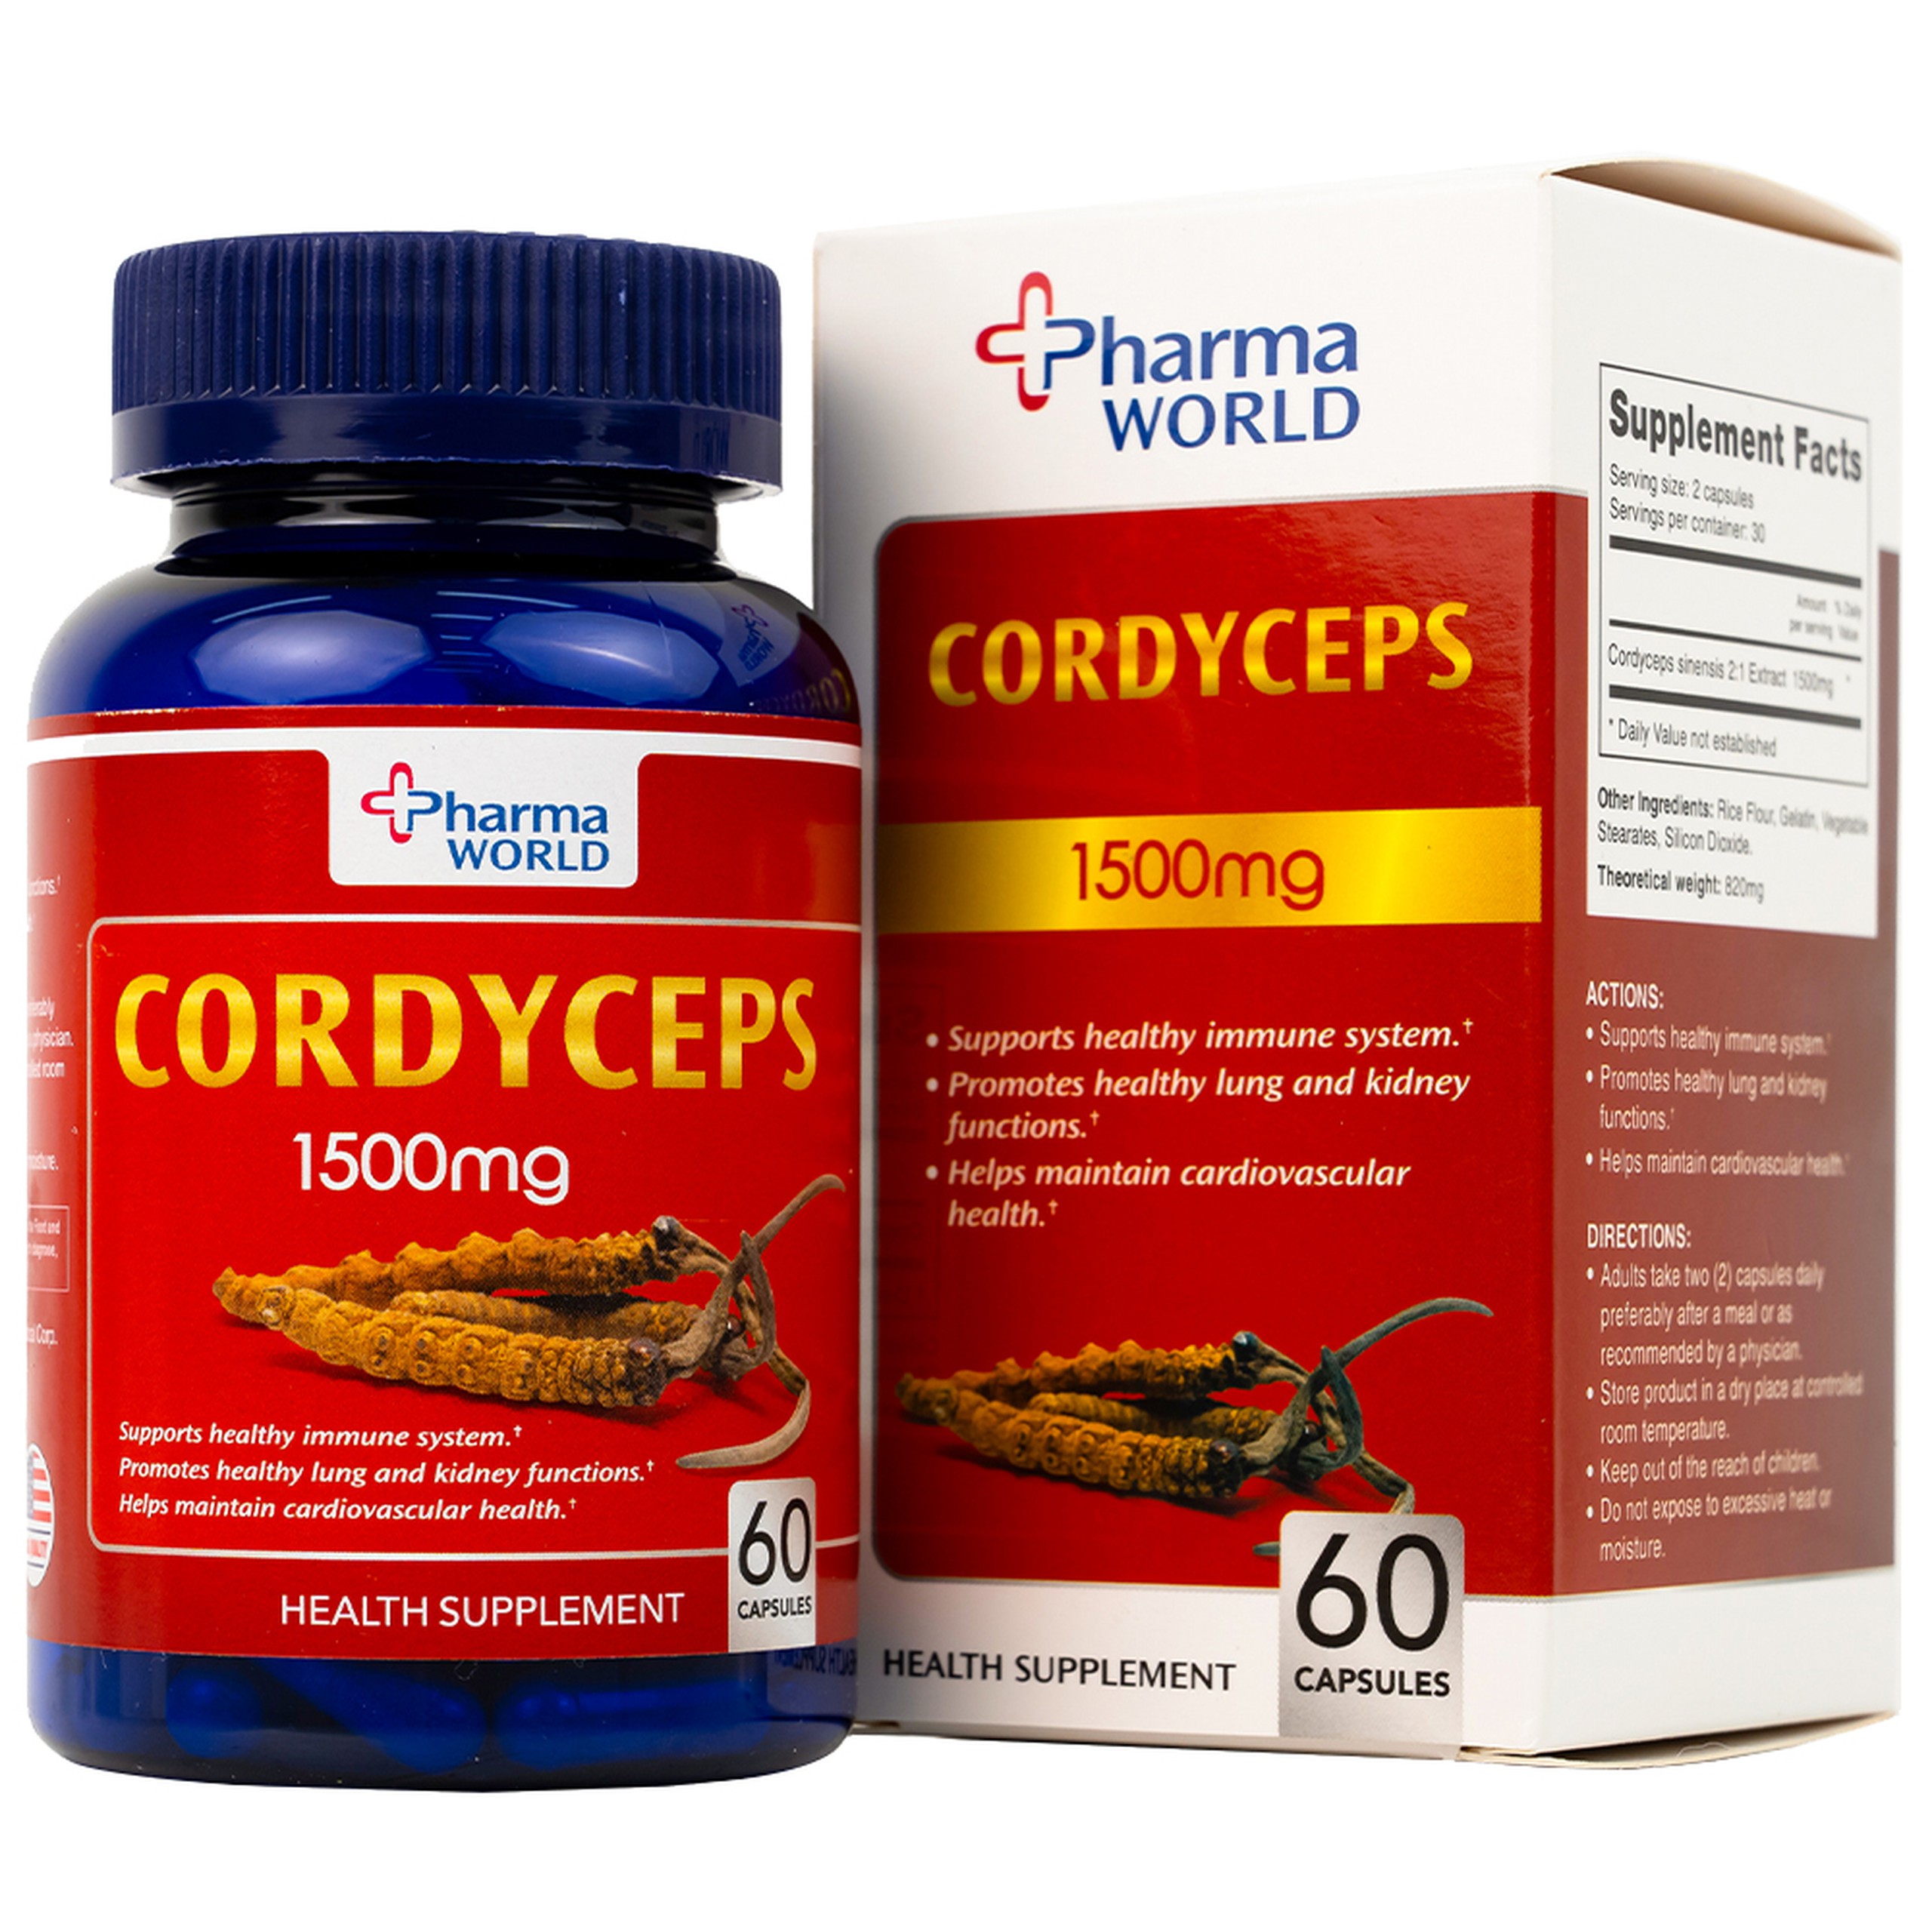 Viên uống Đông Trùng Hạ Thảo Pharma World Cordyceps 1500mg hỗ trợ tốt cho phổi và thận (60 viên)